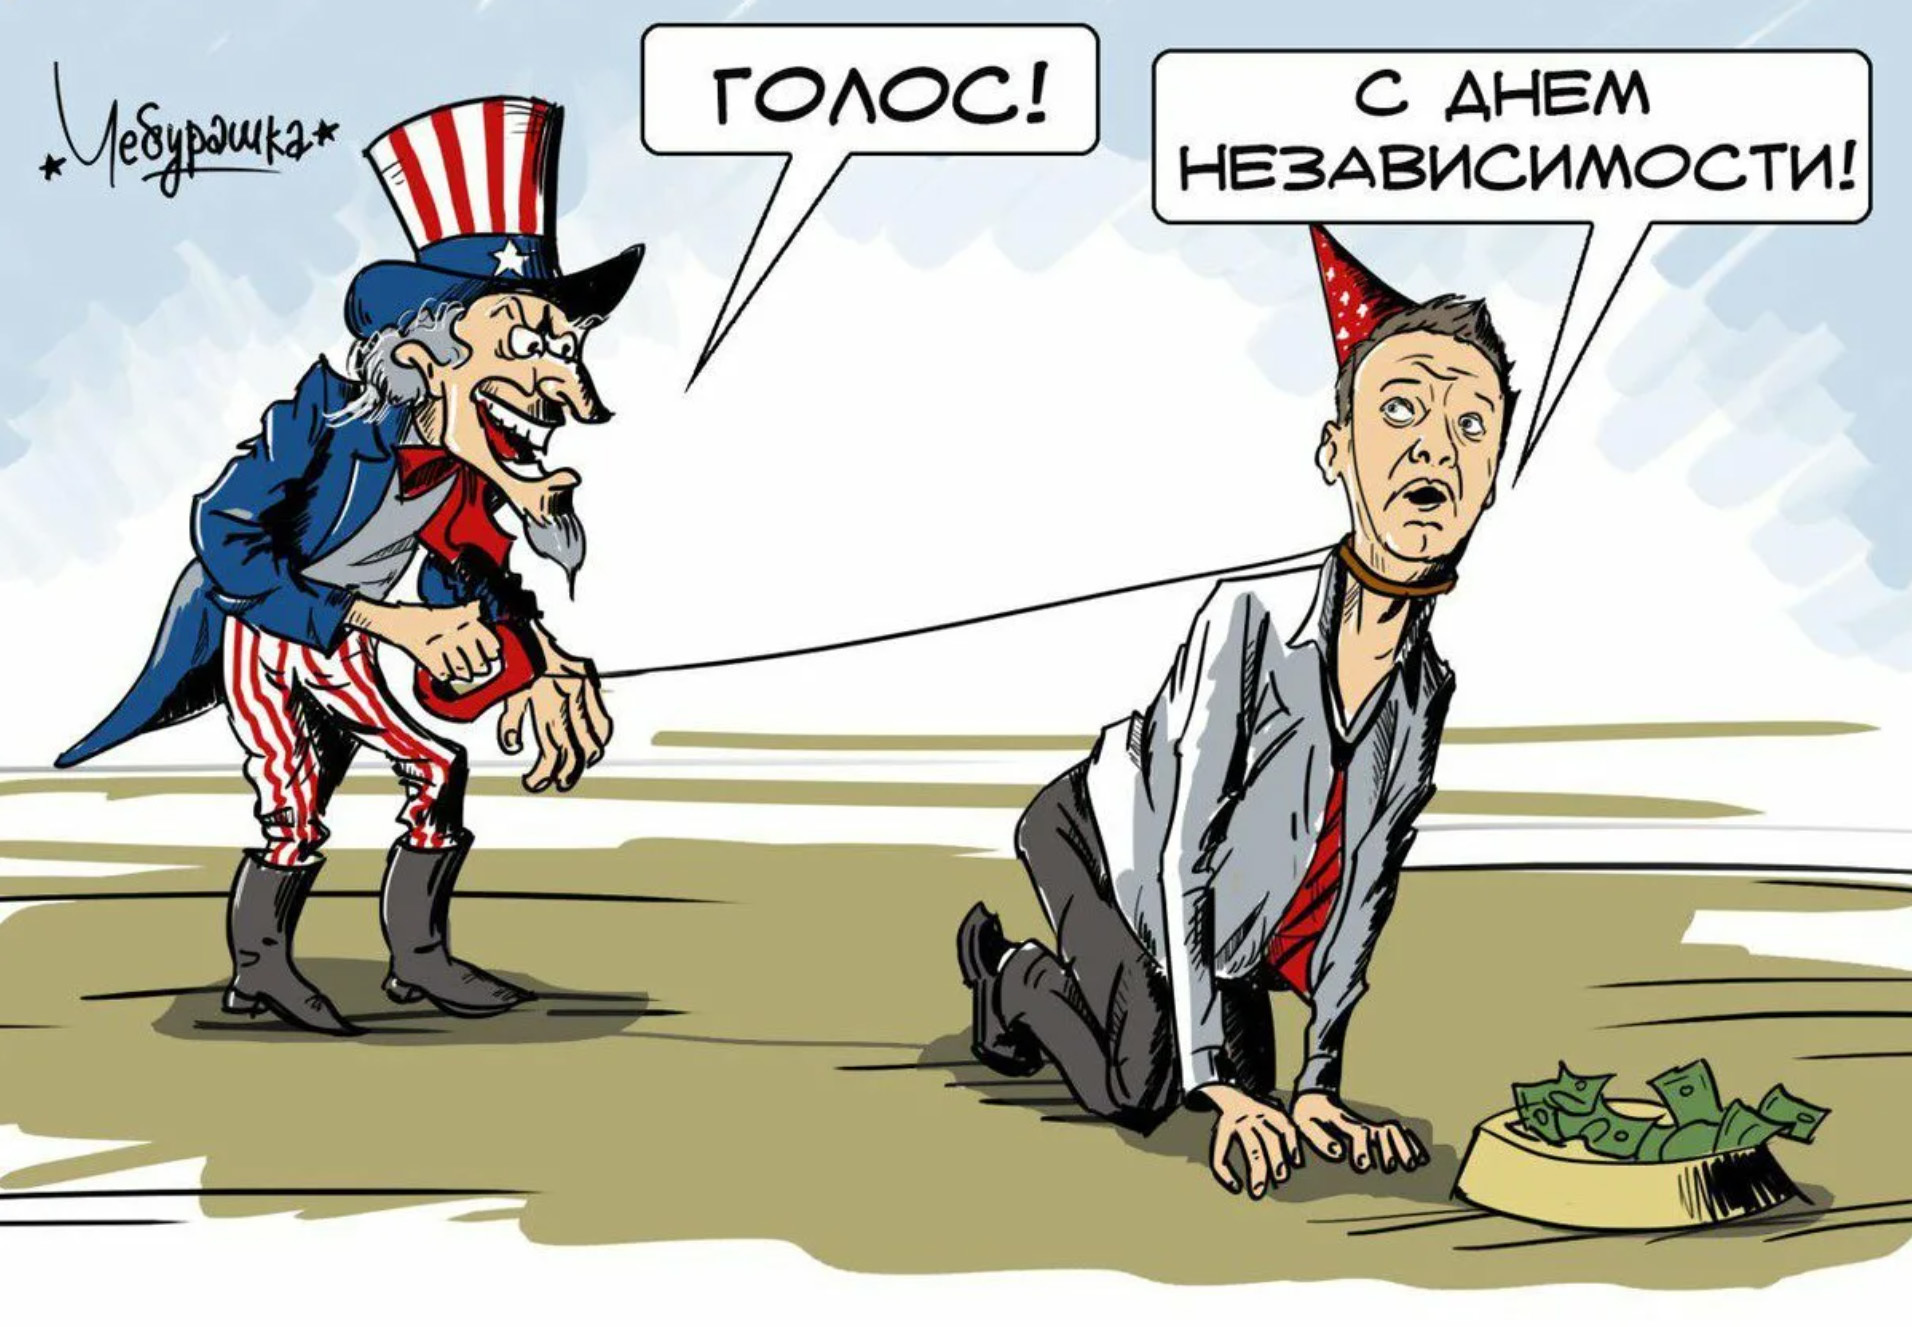 Украинская пародия. Навальный карикатура. День независимости США карикатура. Навальный шарж. Правозащитники карикатуры.